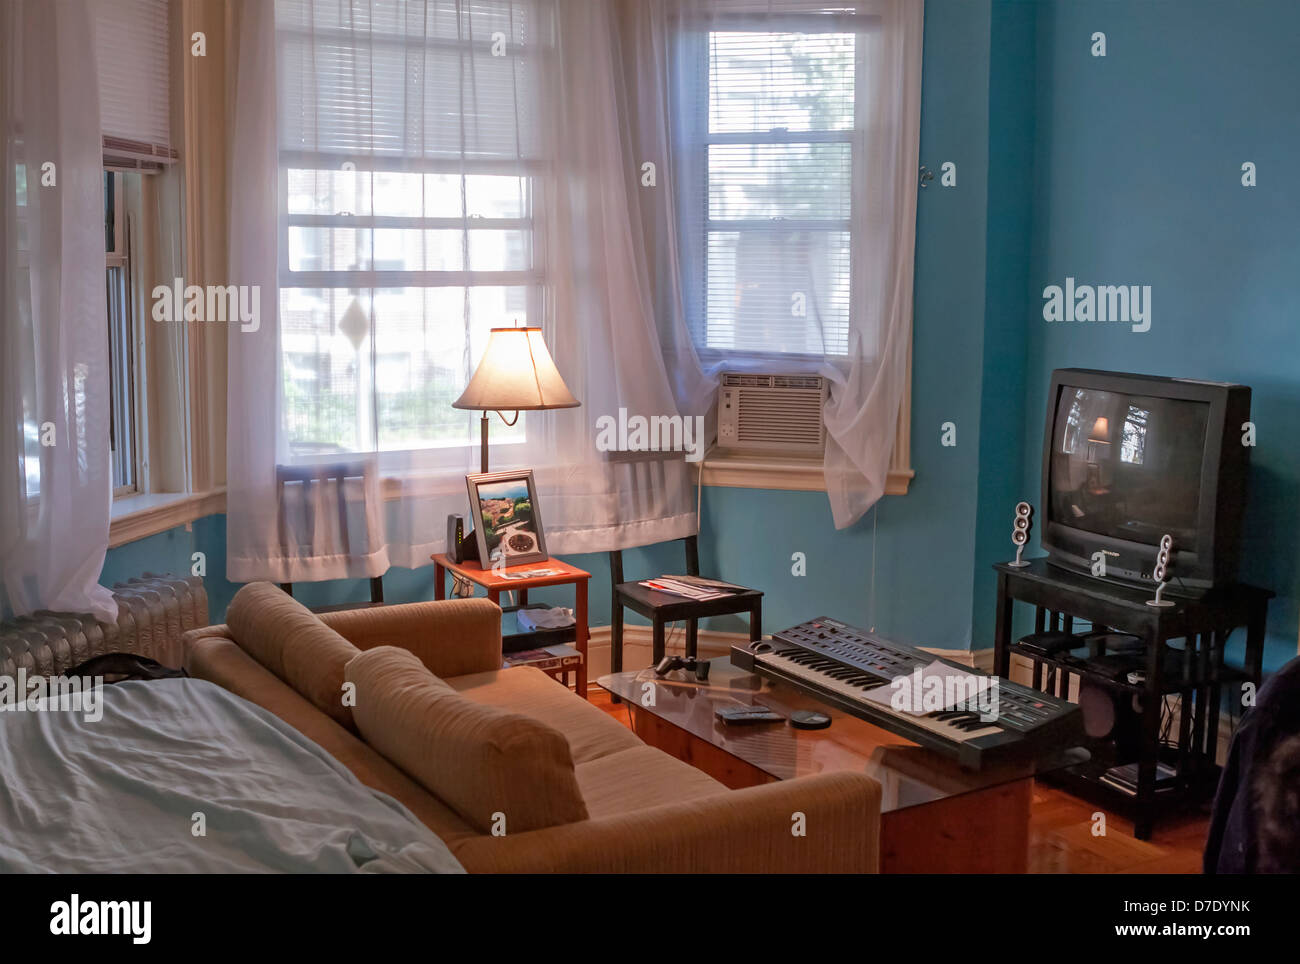 Ein Studio-Apartment in Boston verfügt über Holzfußböden und reichlich Licht. Stockfoto